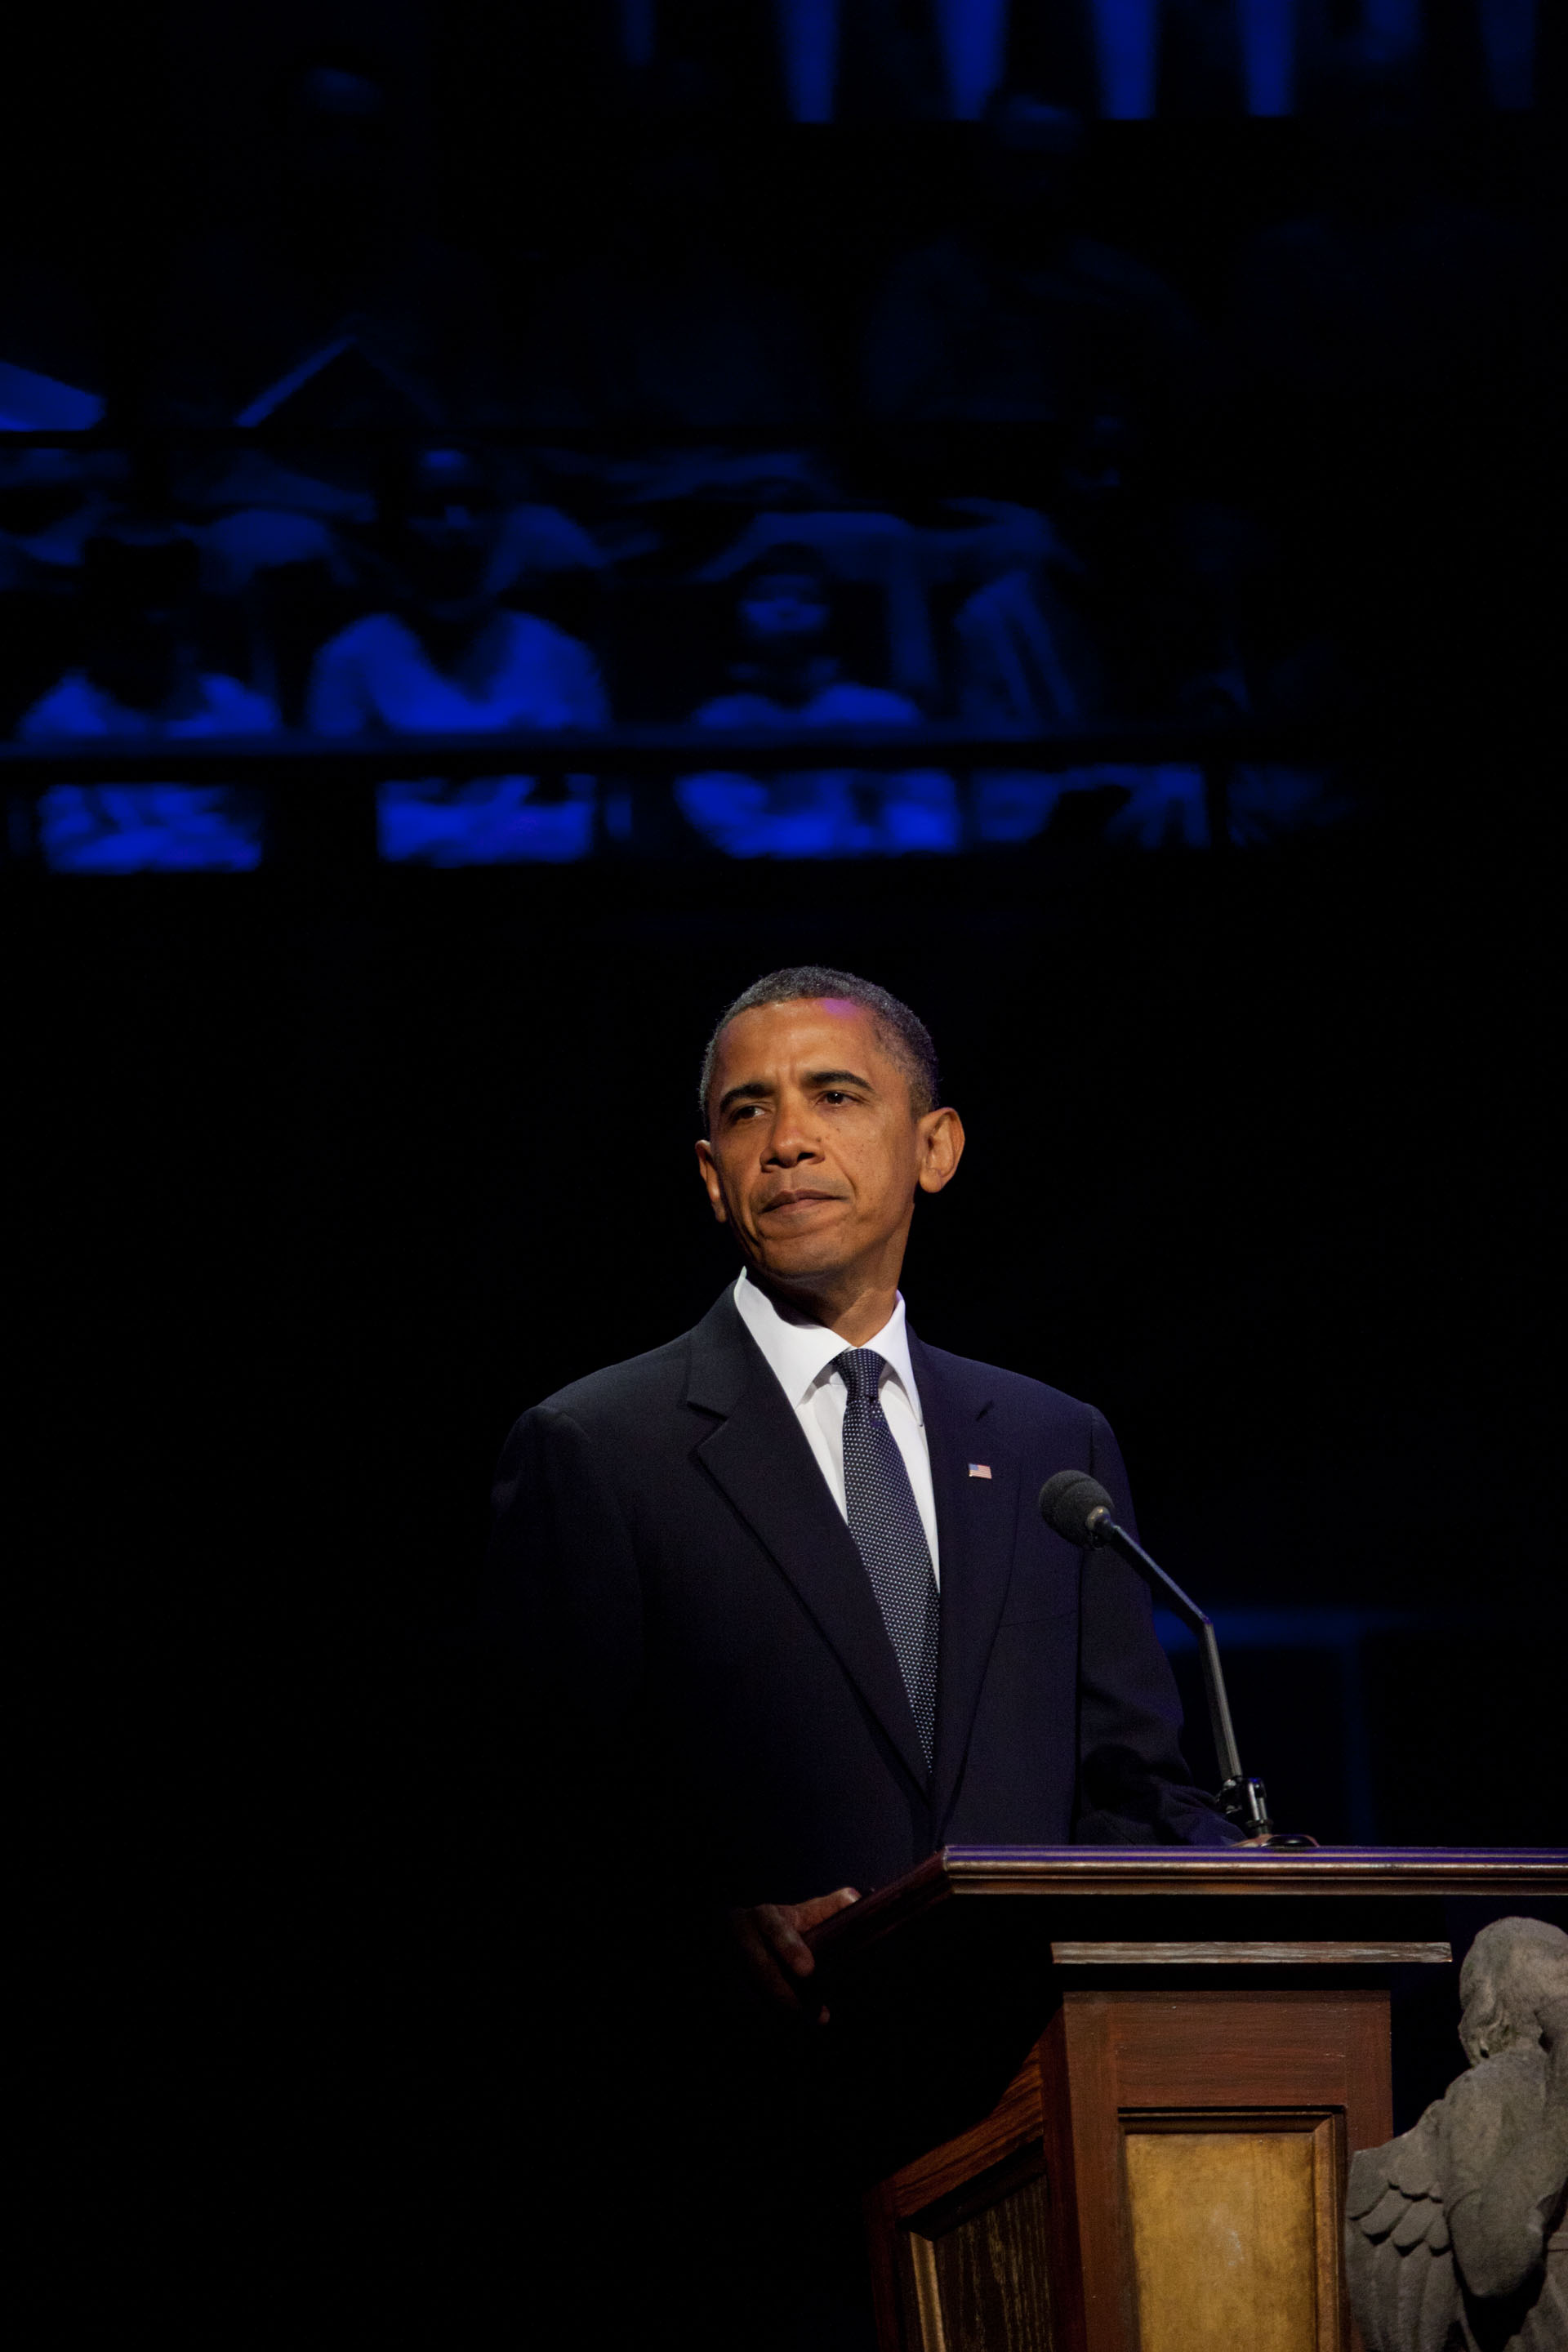 President Barack Obama delivers remarks during the Concert for Hope